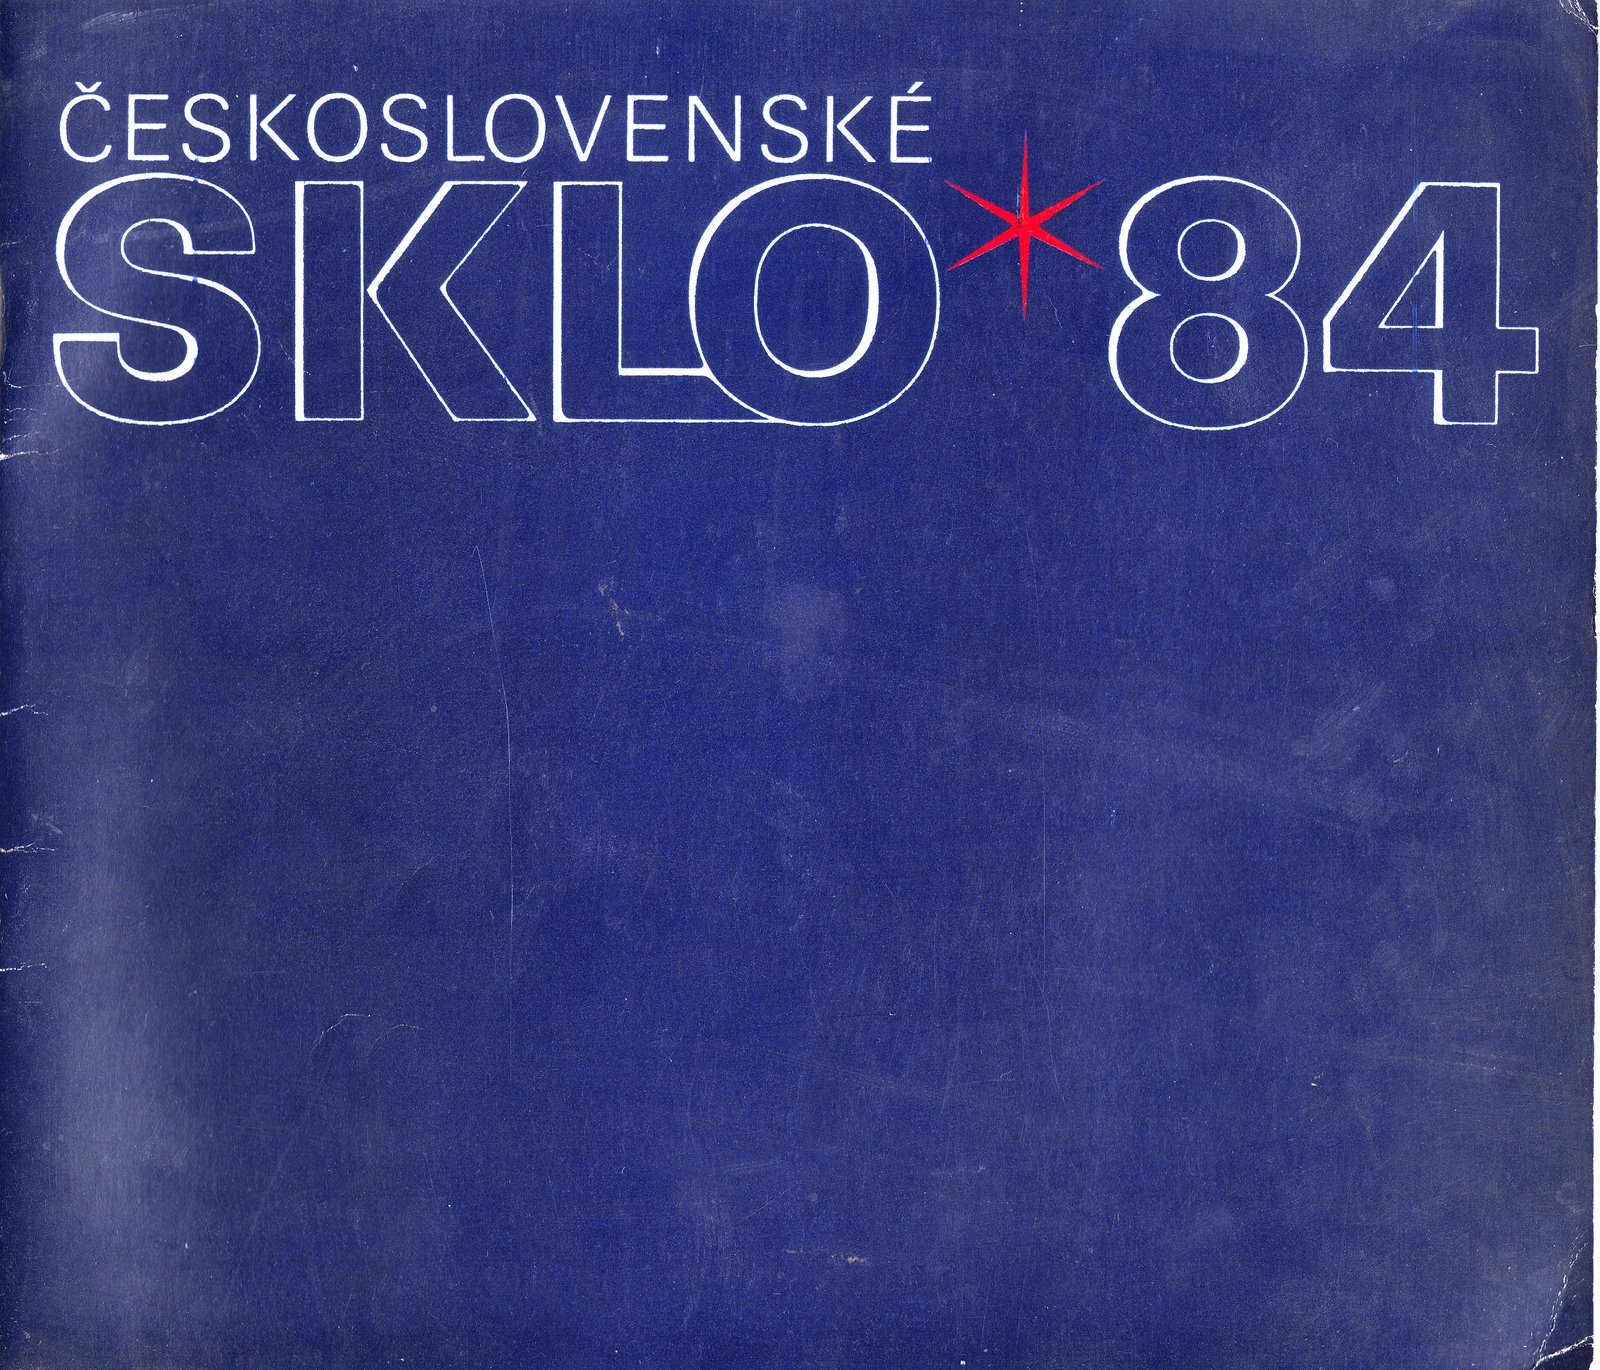 Československé sklo 84